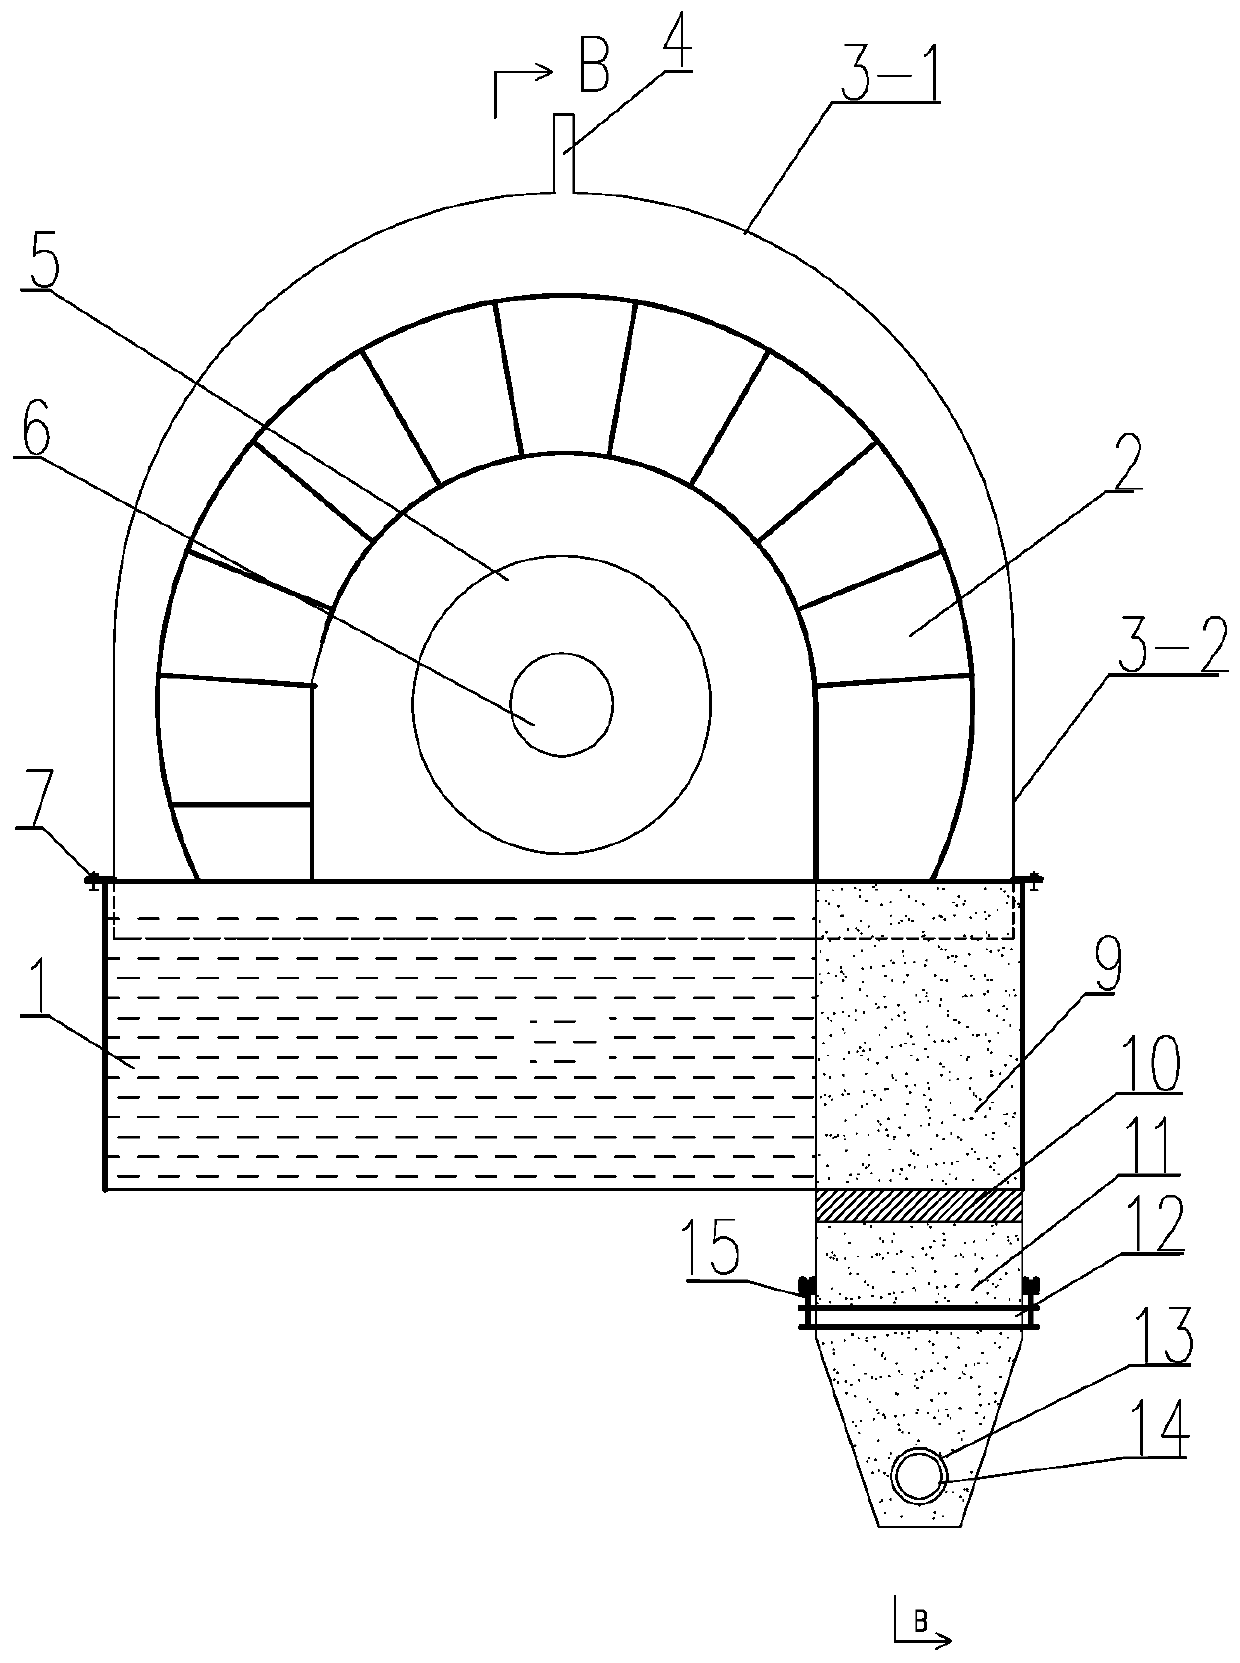 Self-sealing pressurizing plate type filter